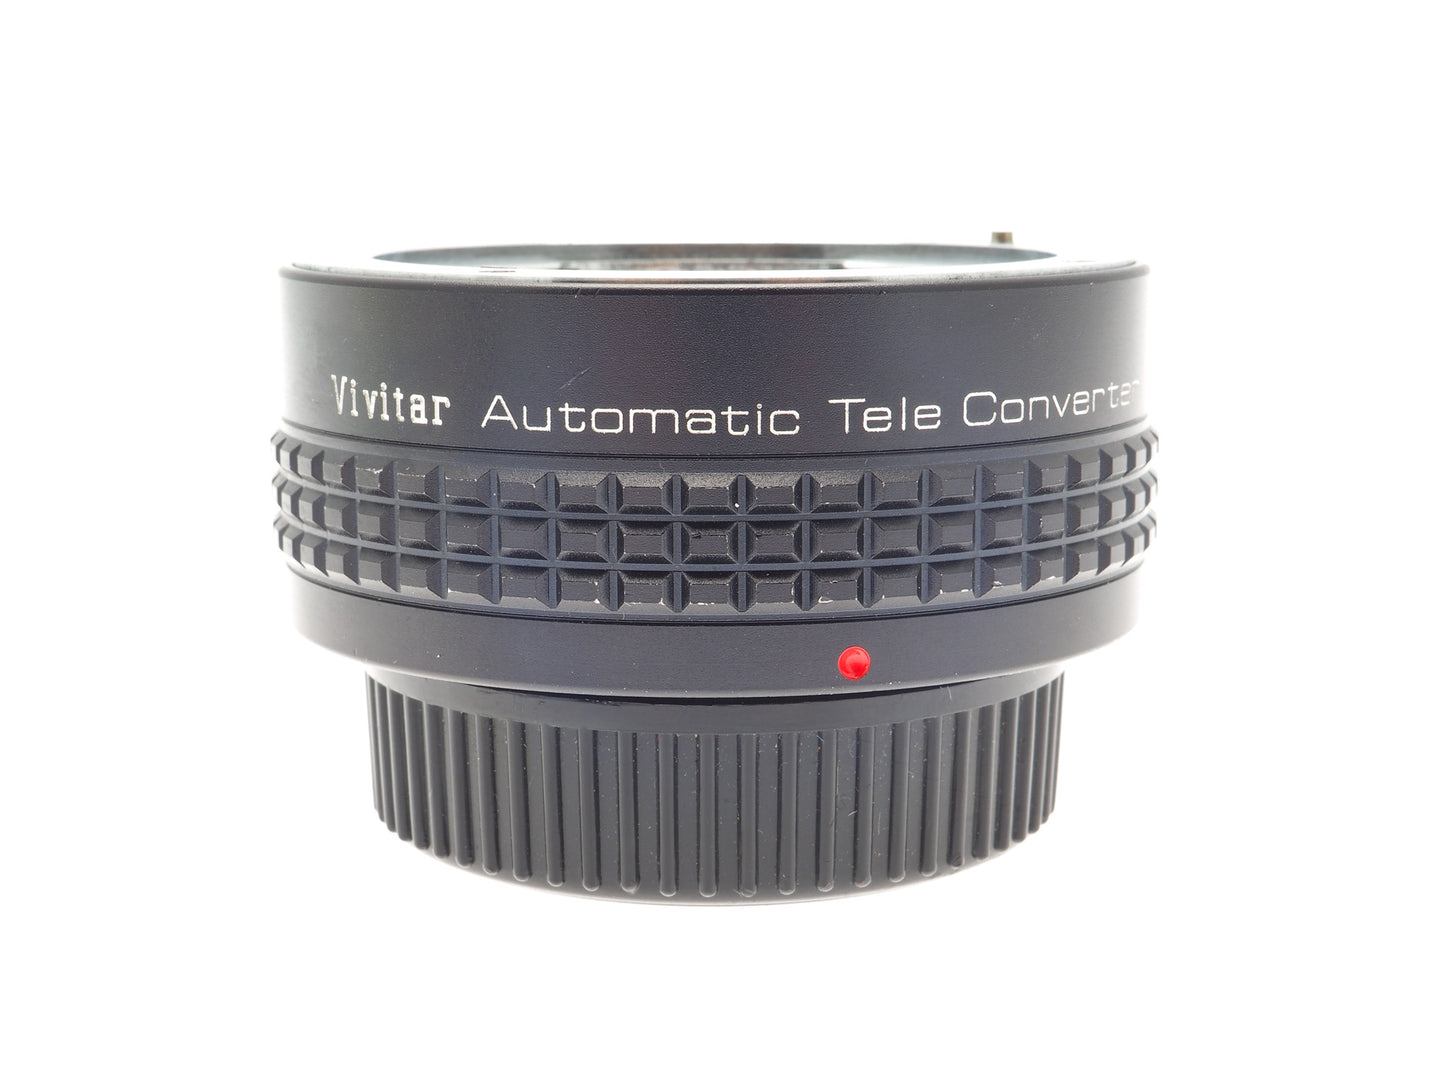 Vivitar Automatic Tele Converter 2X-22 - Accessory